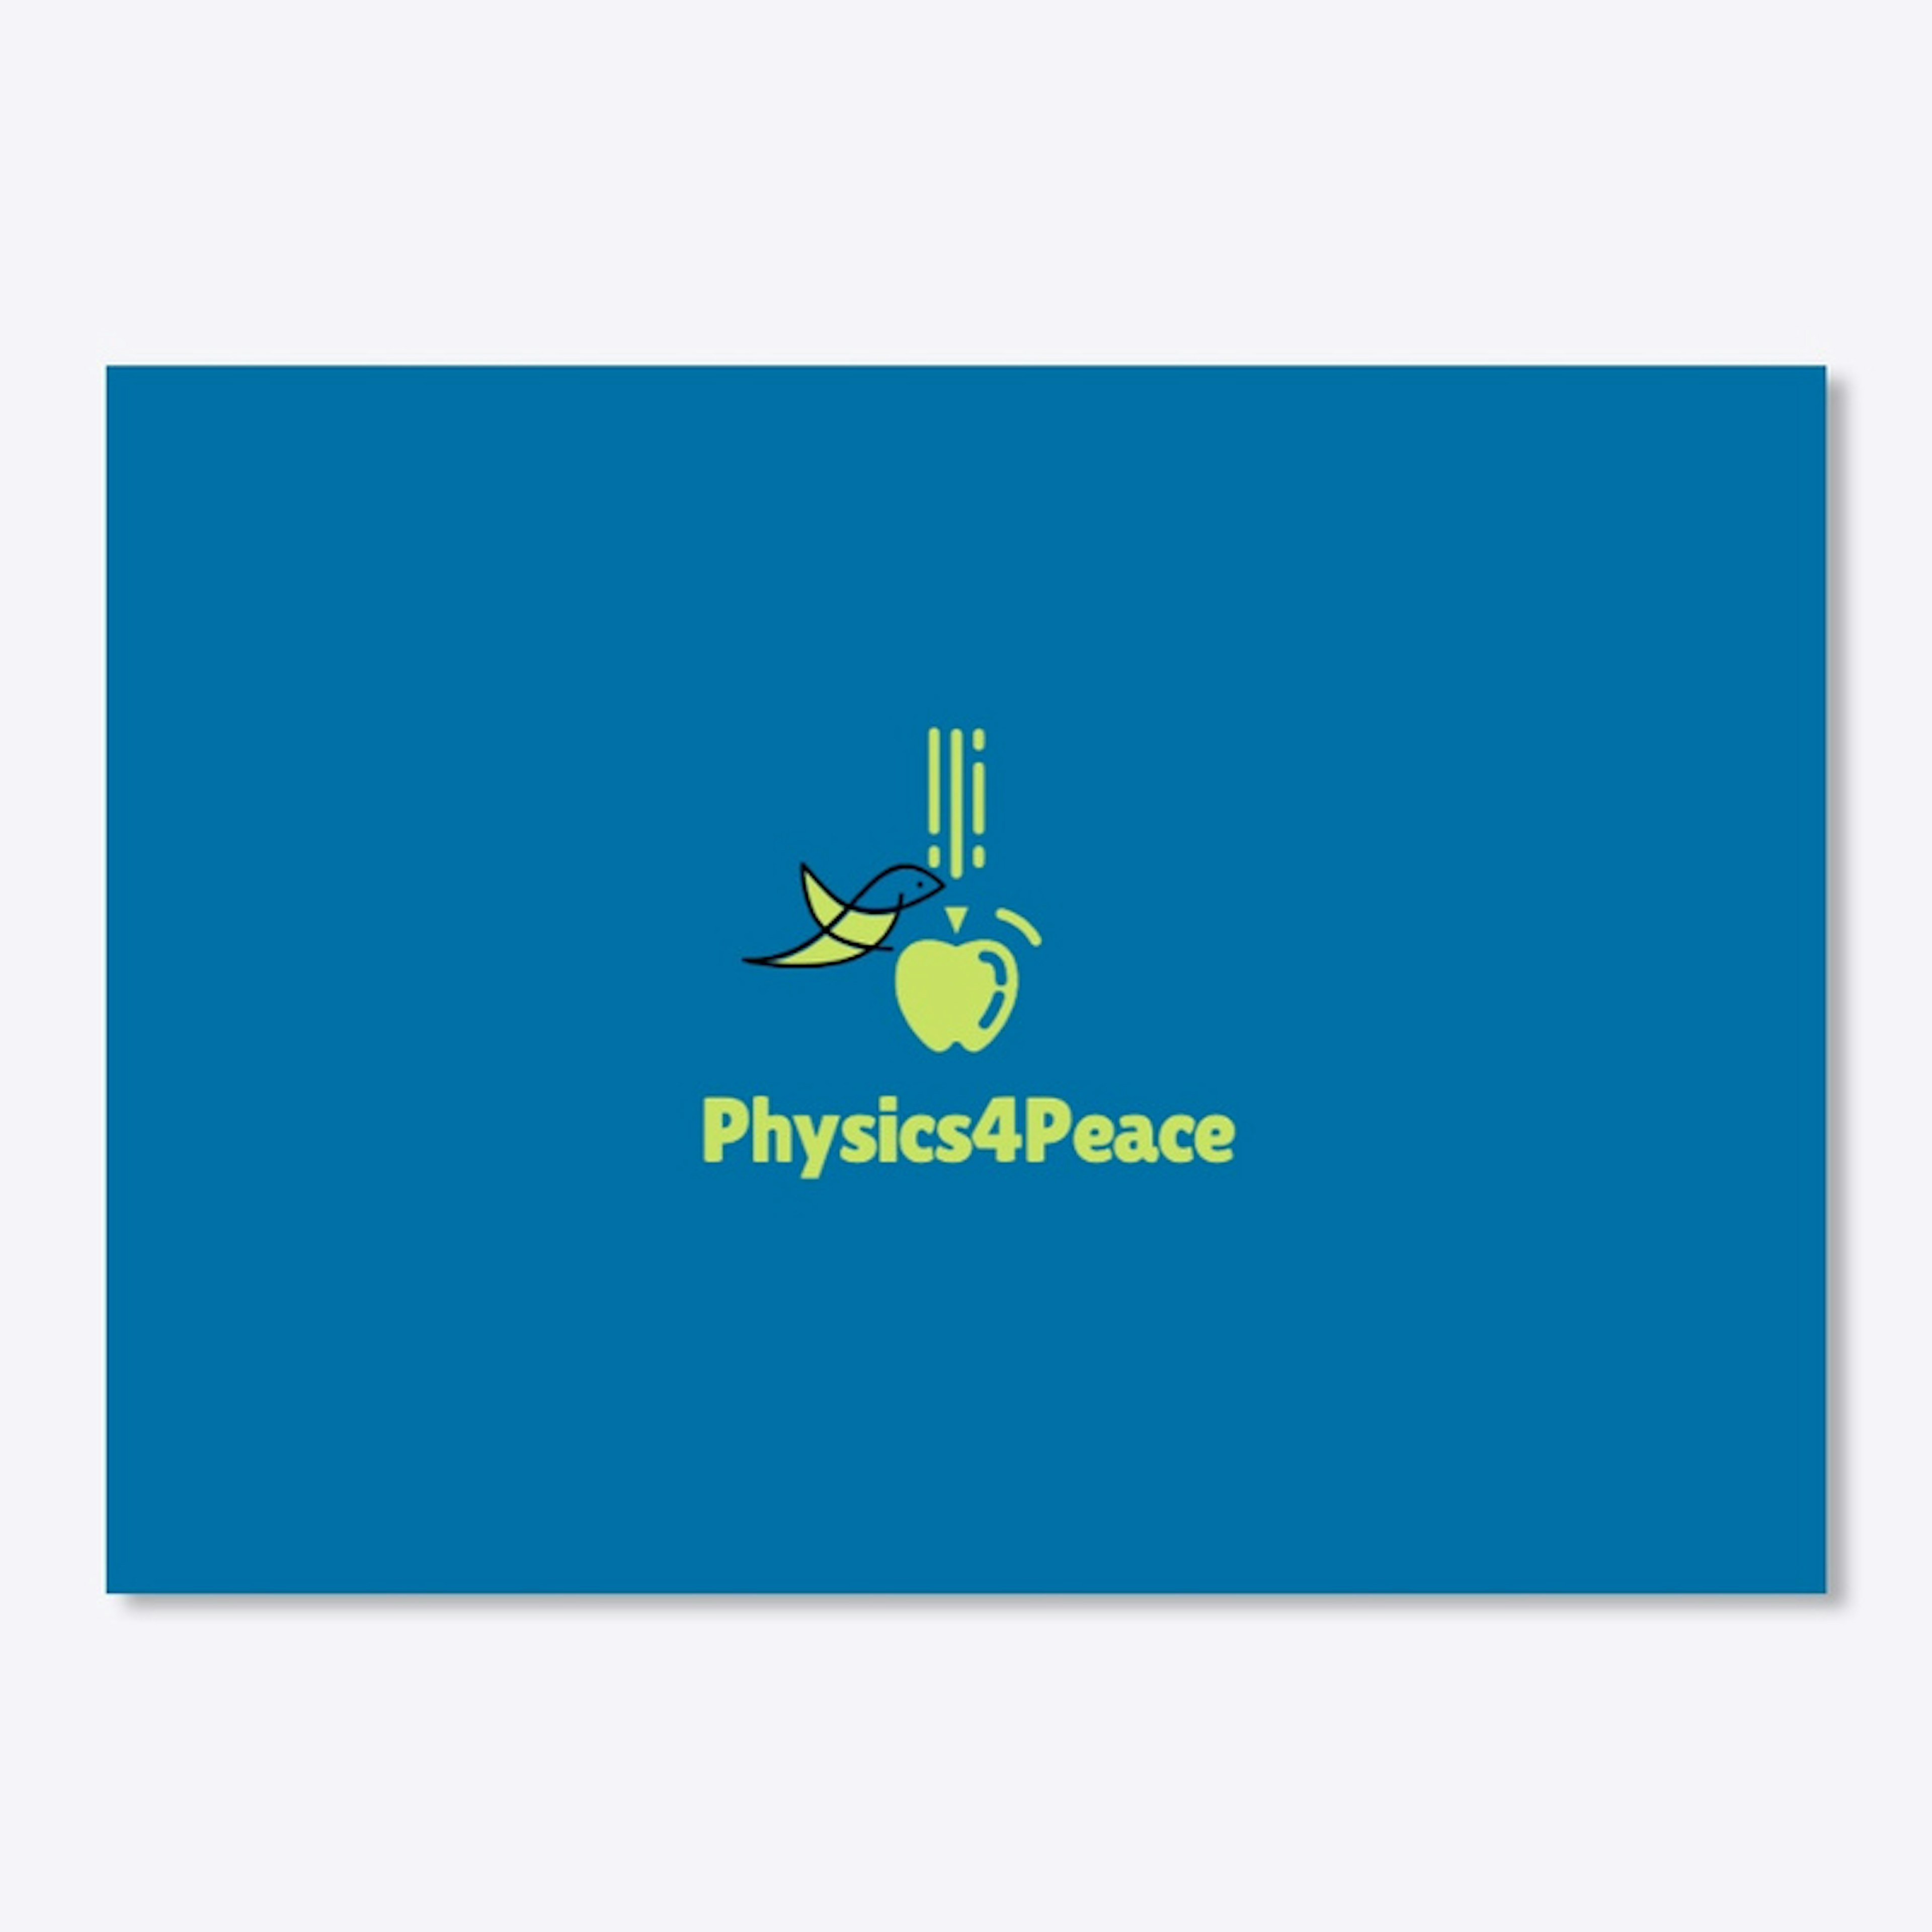 Physics4Peace